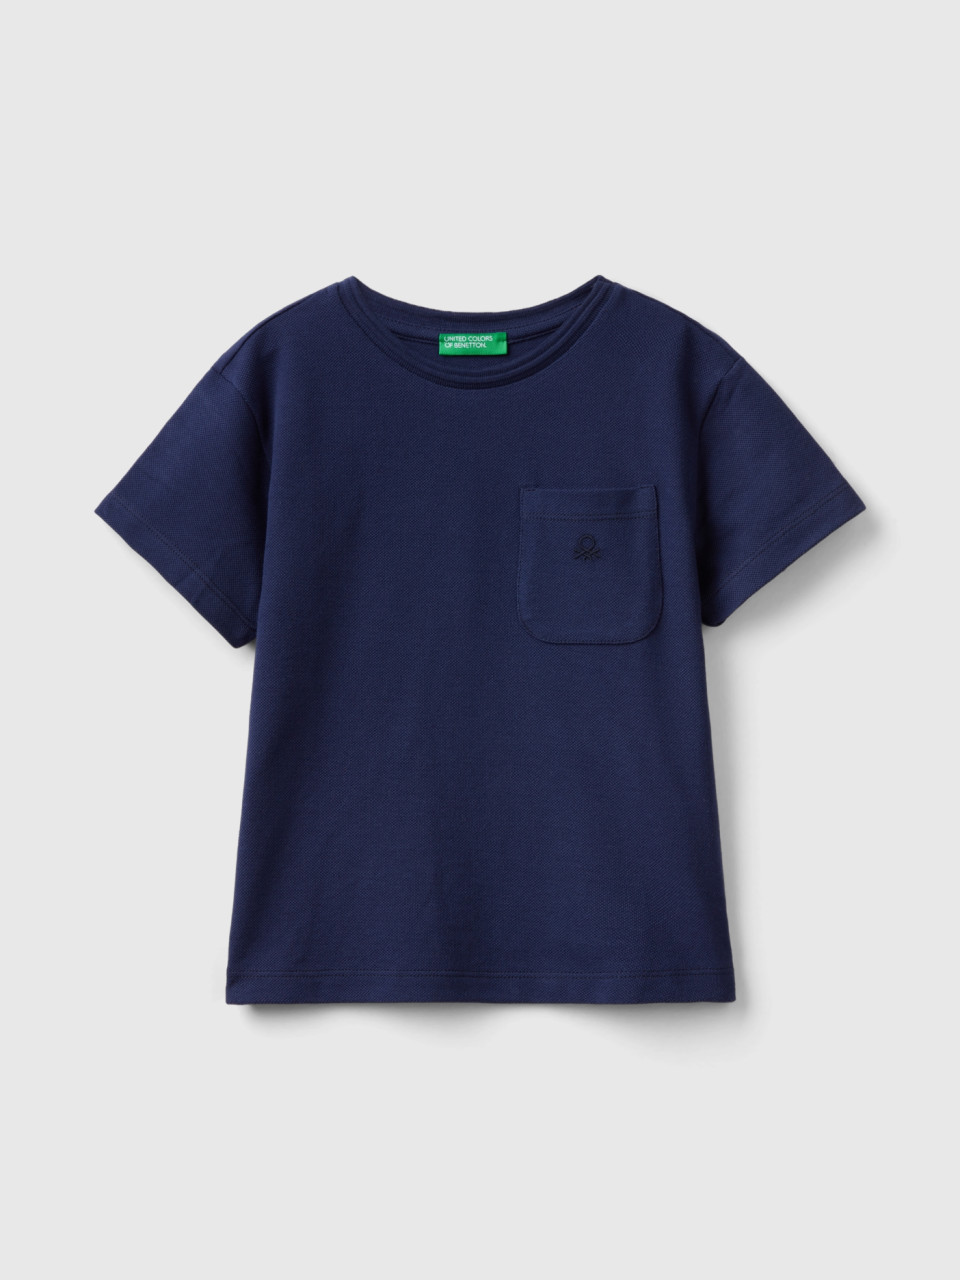 Benetton, Camiseta Con Bolsillo, Azul Oscuro, Niños